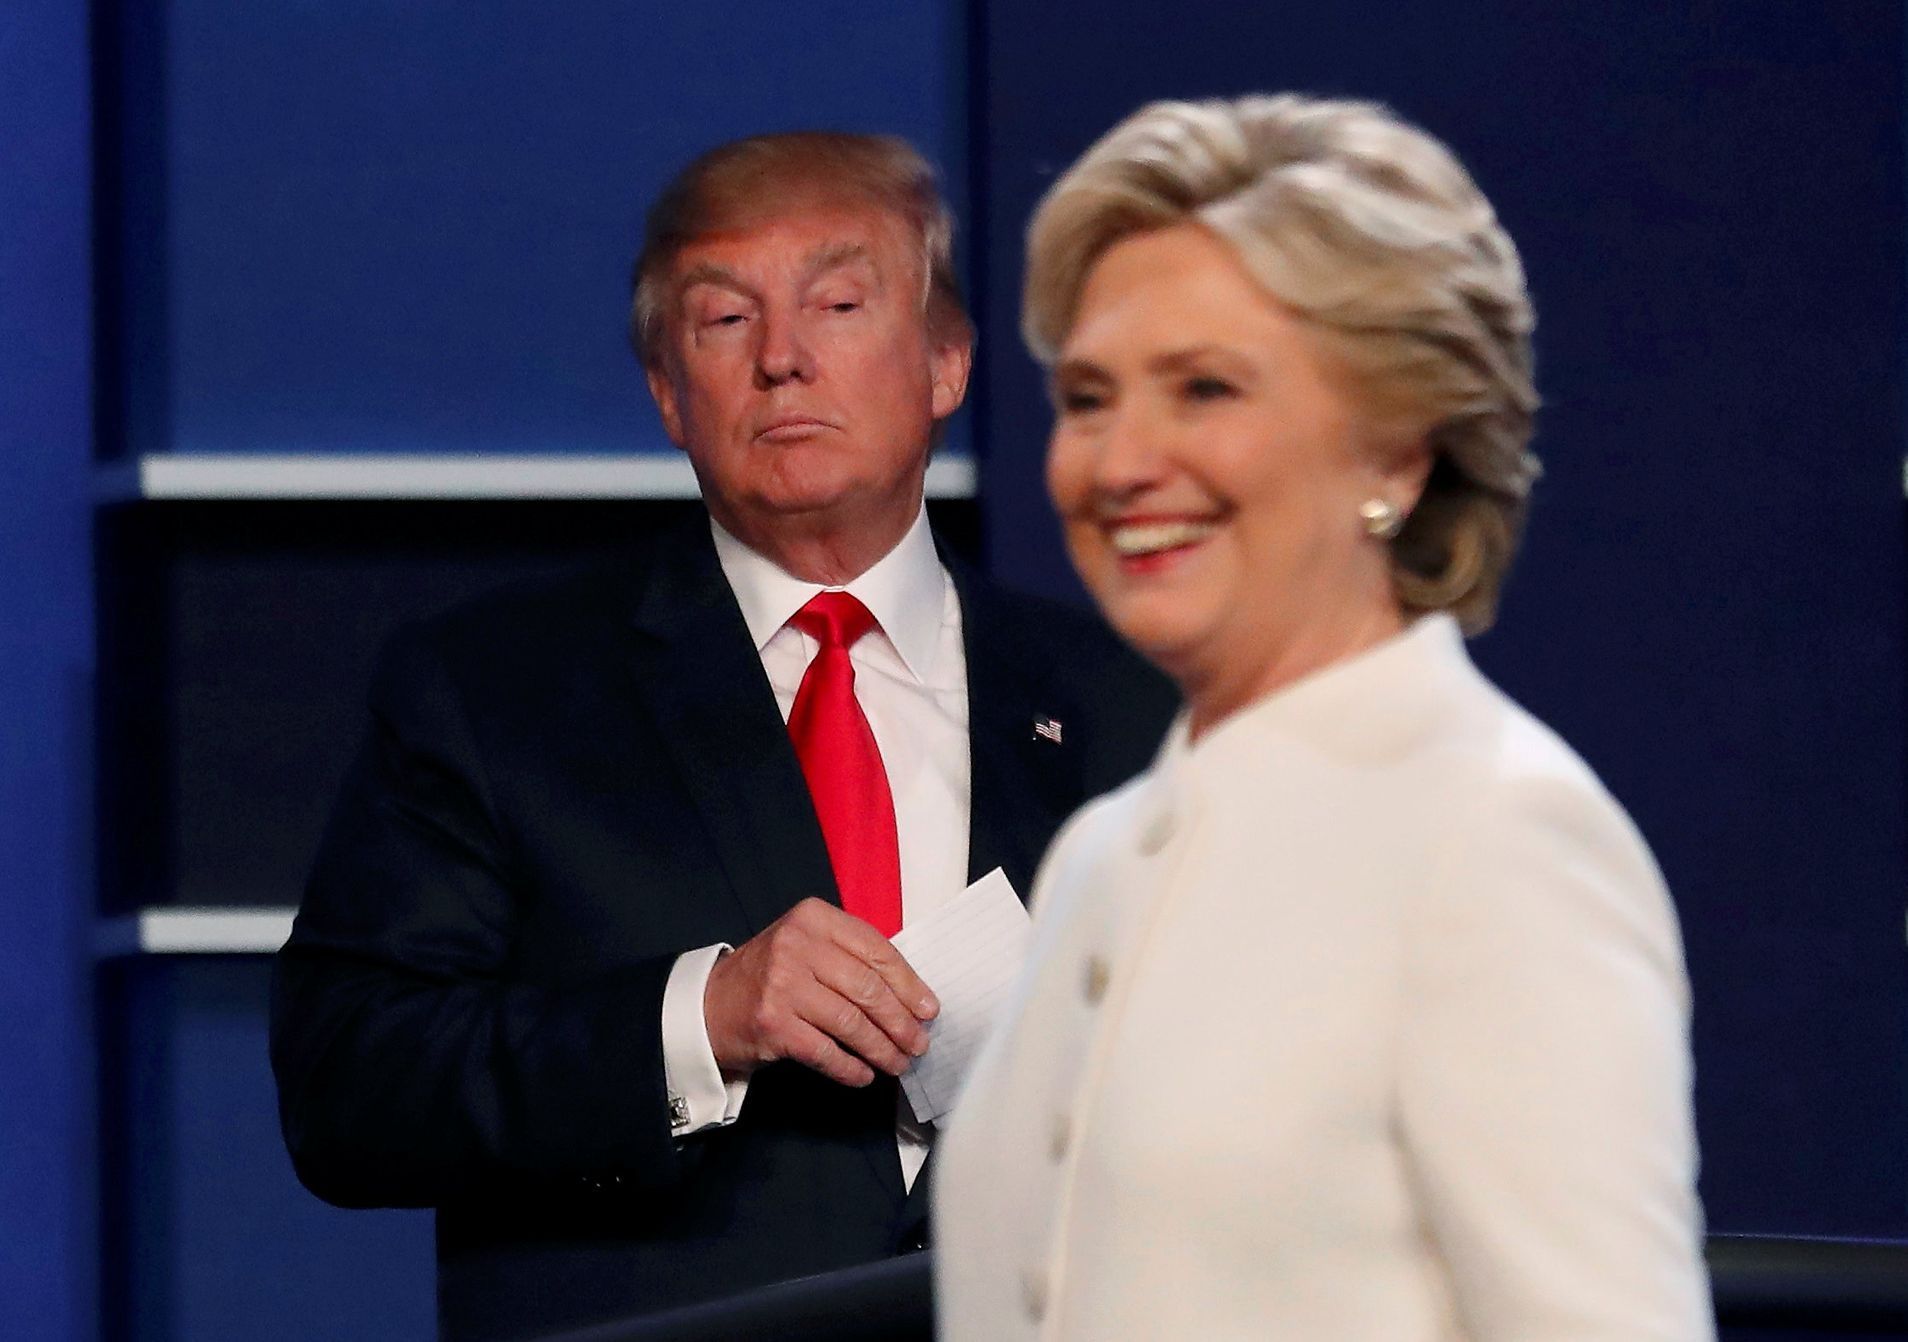 Clintonová vs. Trump, debata